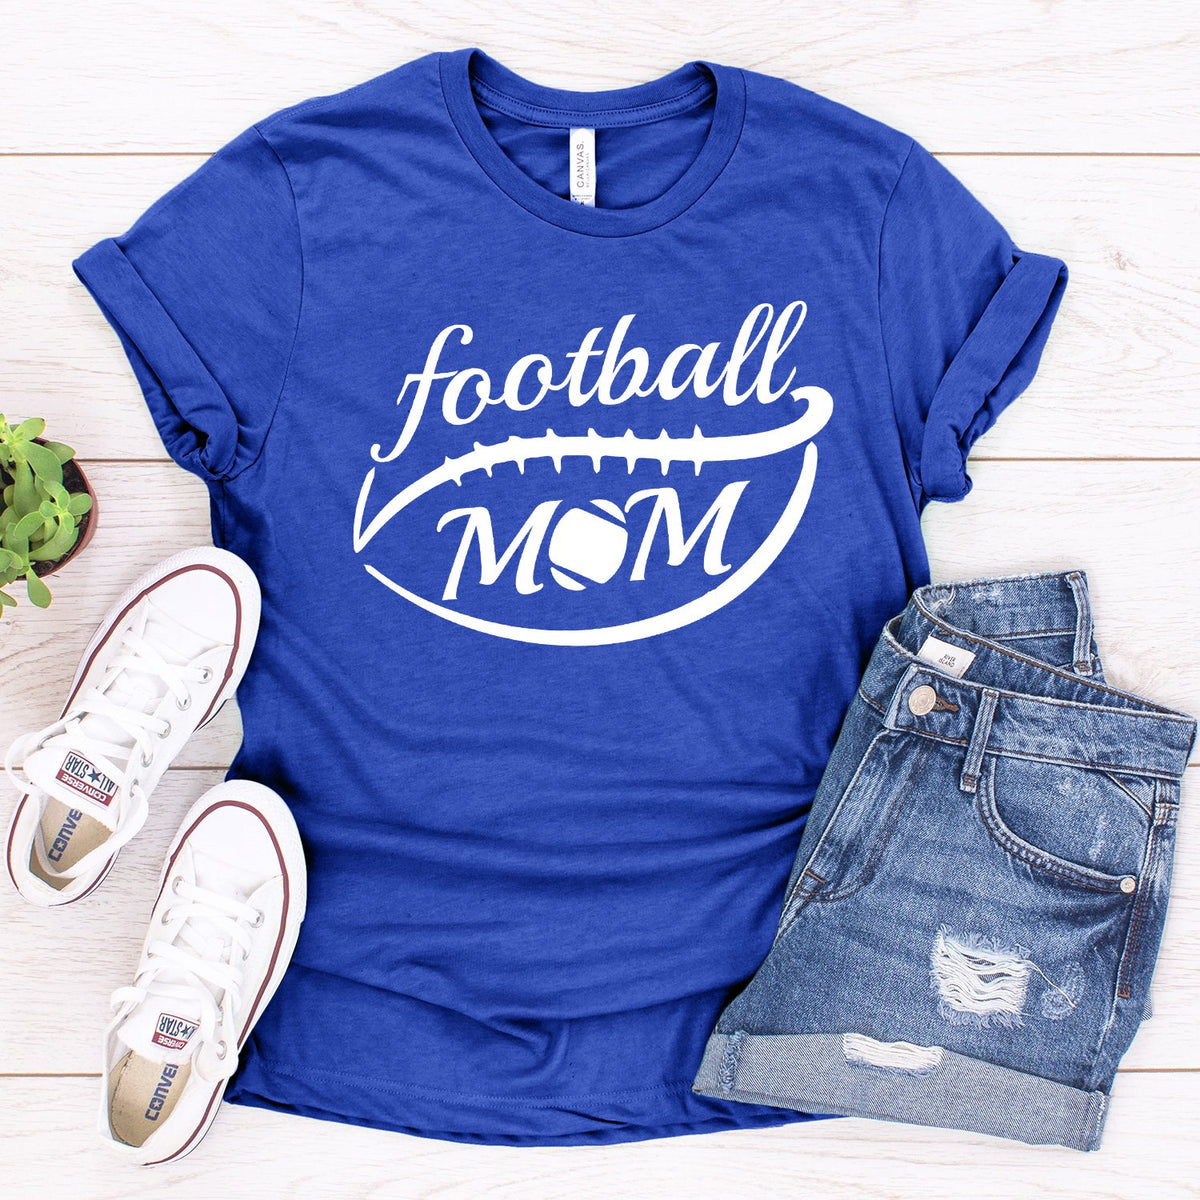 Football Mom - Short Sleeve Tee Shirt